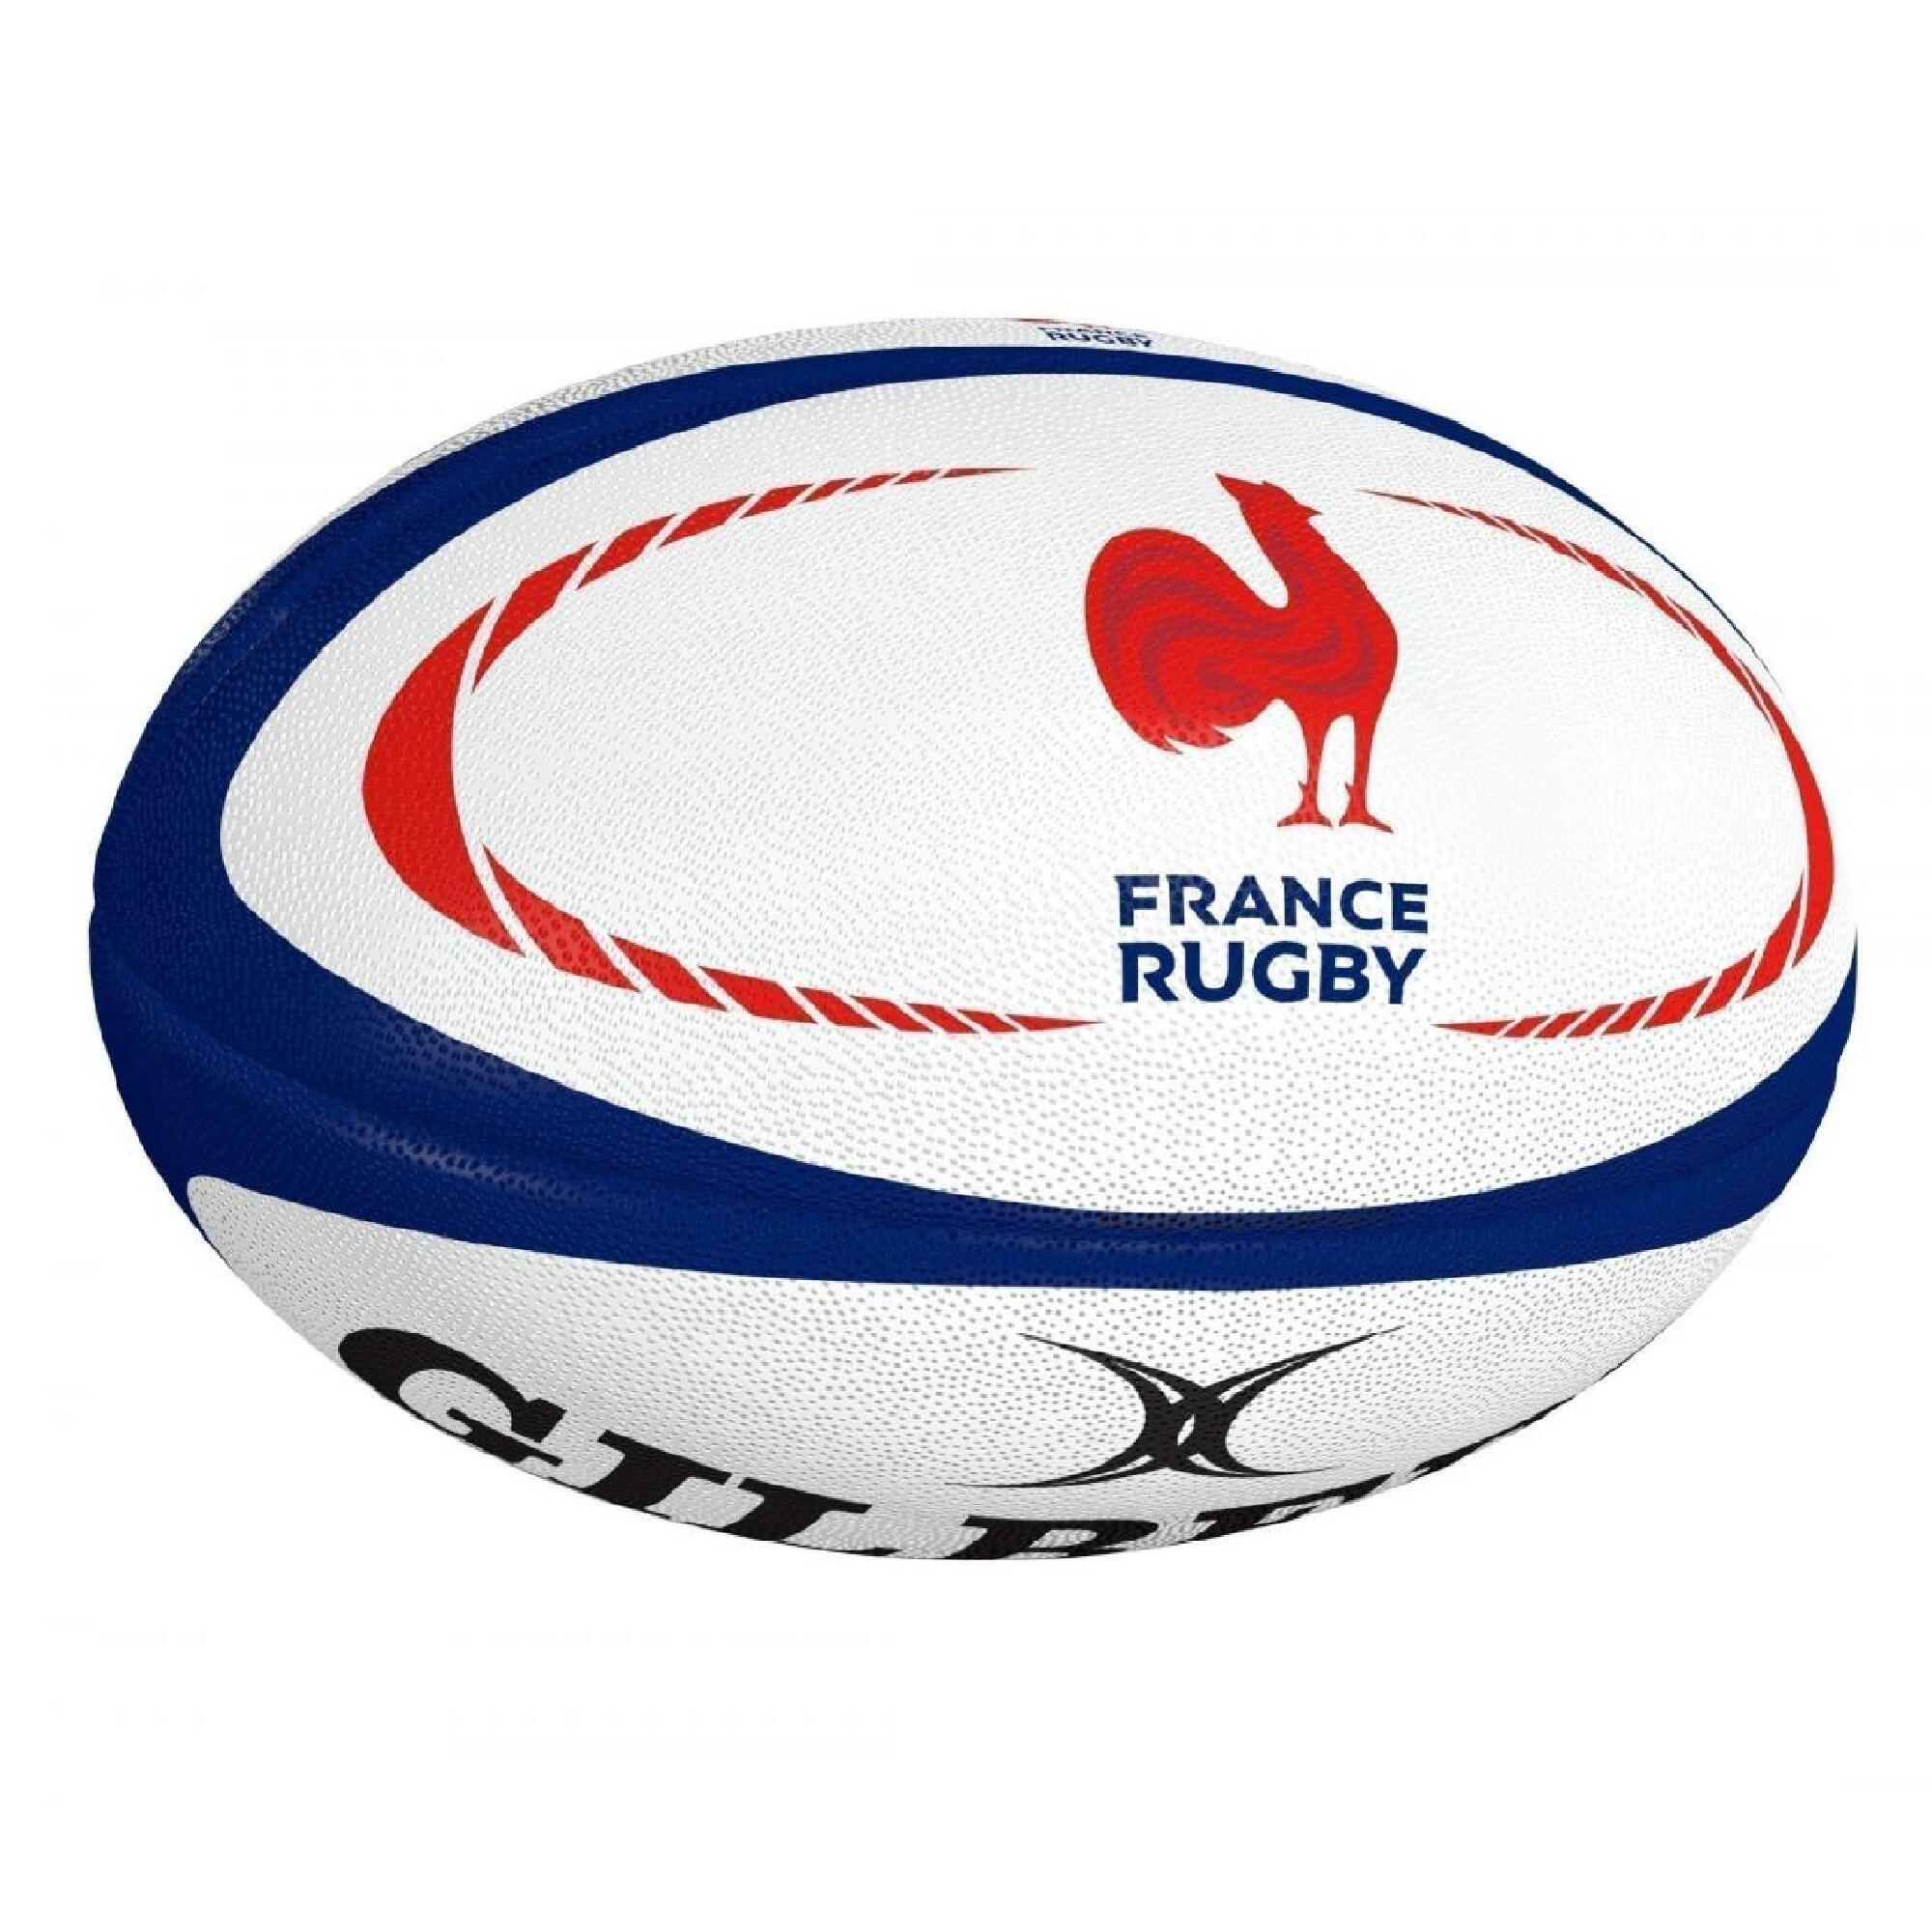 Minge Rugby Gilbert Replica France Mărimea 5 alb-albastru-roșu Accesorii imagine noua